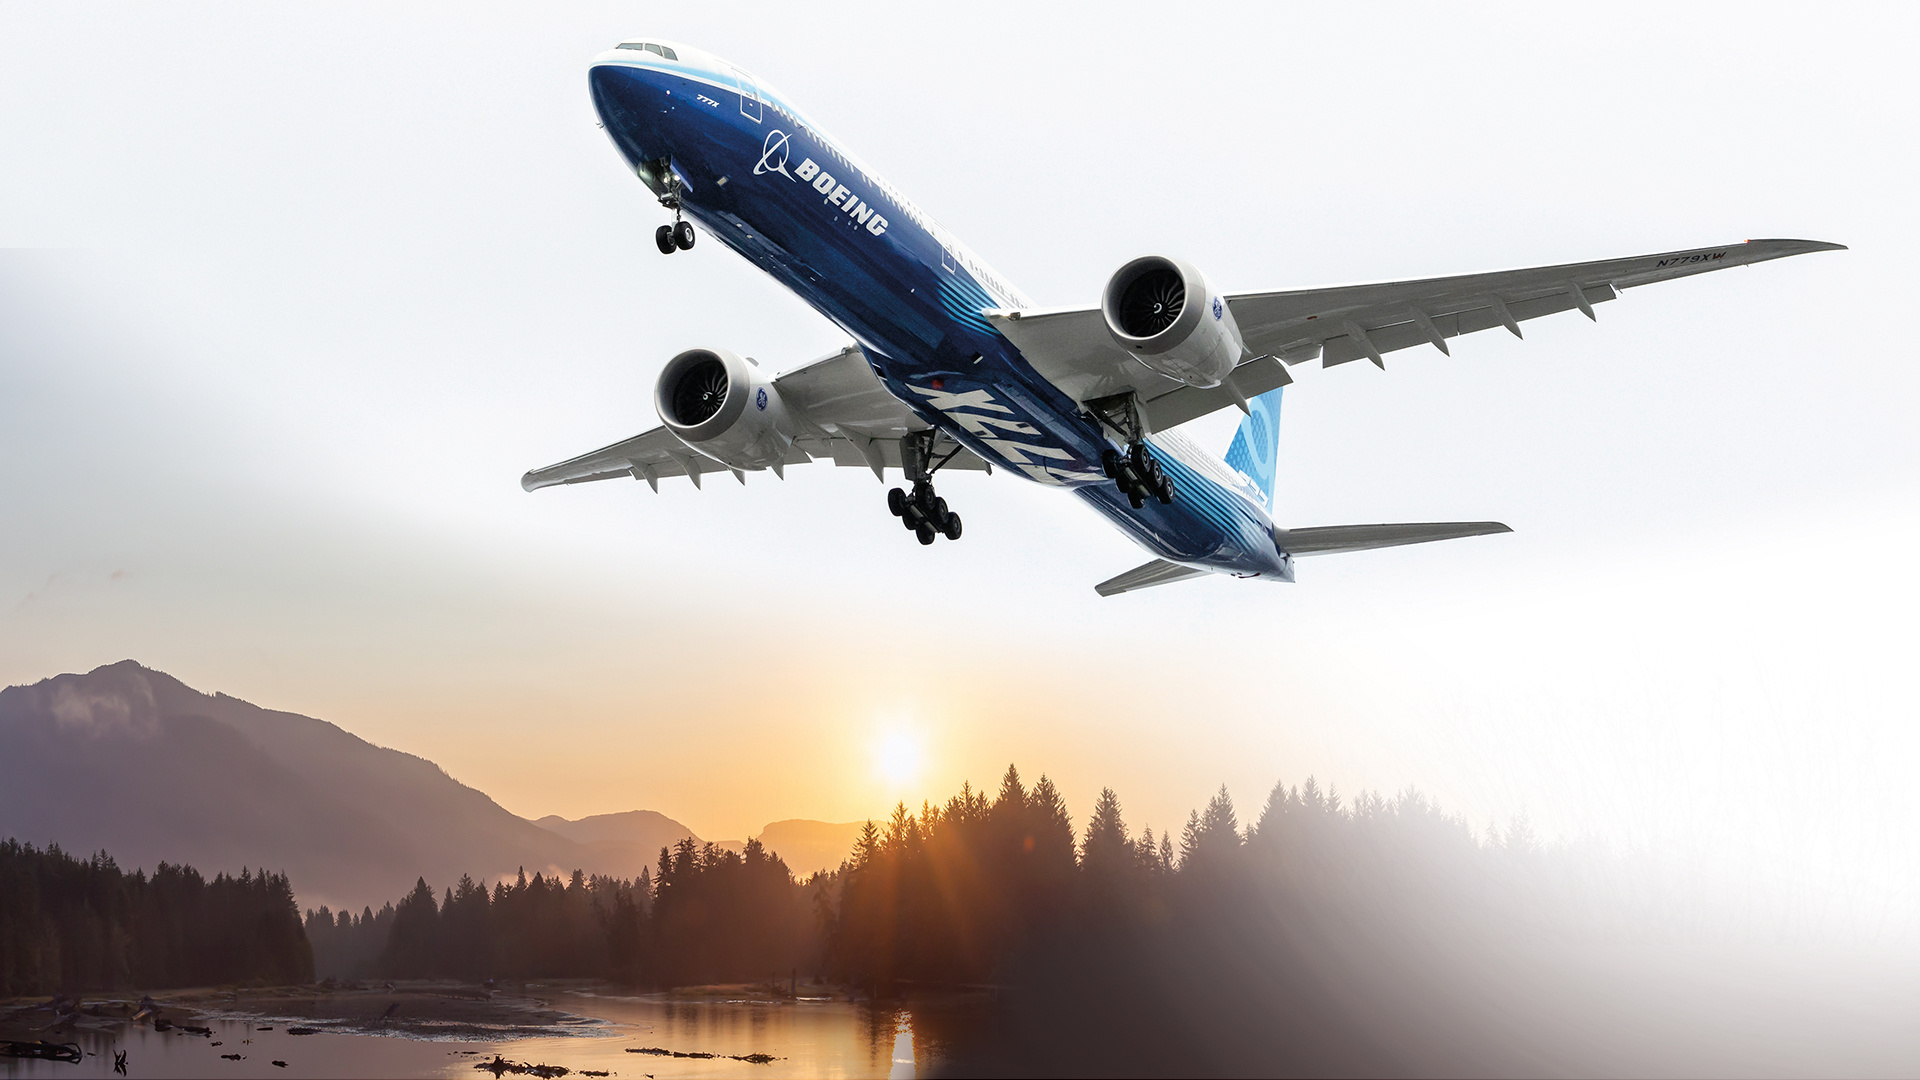 Boeing 777, Travel essentials, Destination inspiration, Aviation wonder, 1920x1080 Full HD Desktop